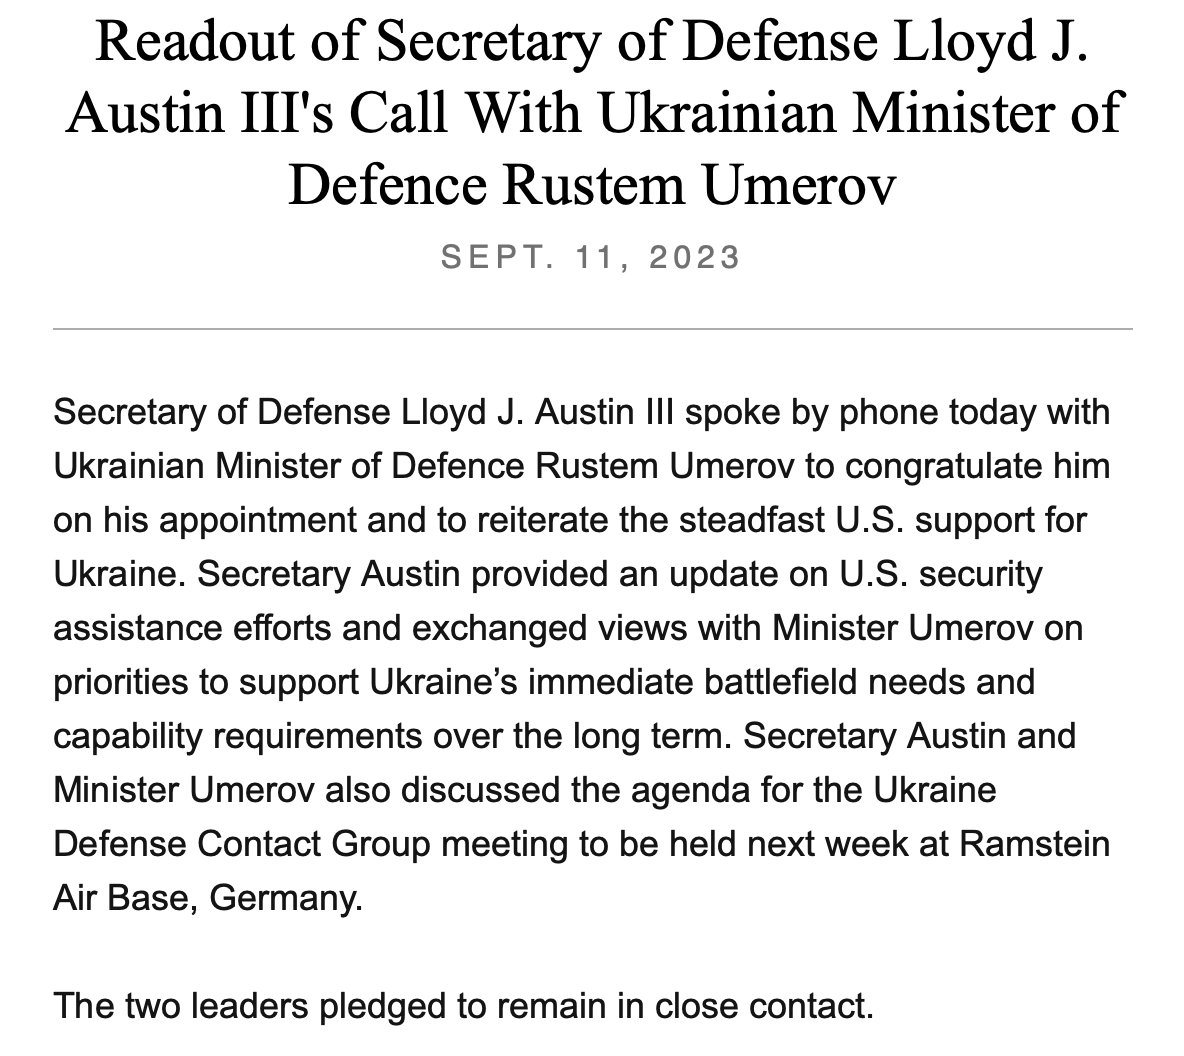 ABŞ @SecDef Lloyd Austin bazar ertəsi Ukraynanın yeni müdafiə naziri Rustem Umerov ilə danışıb, @DeptofDefence. Çağırış ABŞ-ın Ukraynaya davamlı dəstəyini təkrarlamaq və həmçinin Umerova ABŞ yardımı barədə məlumat vermək idi.